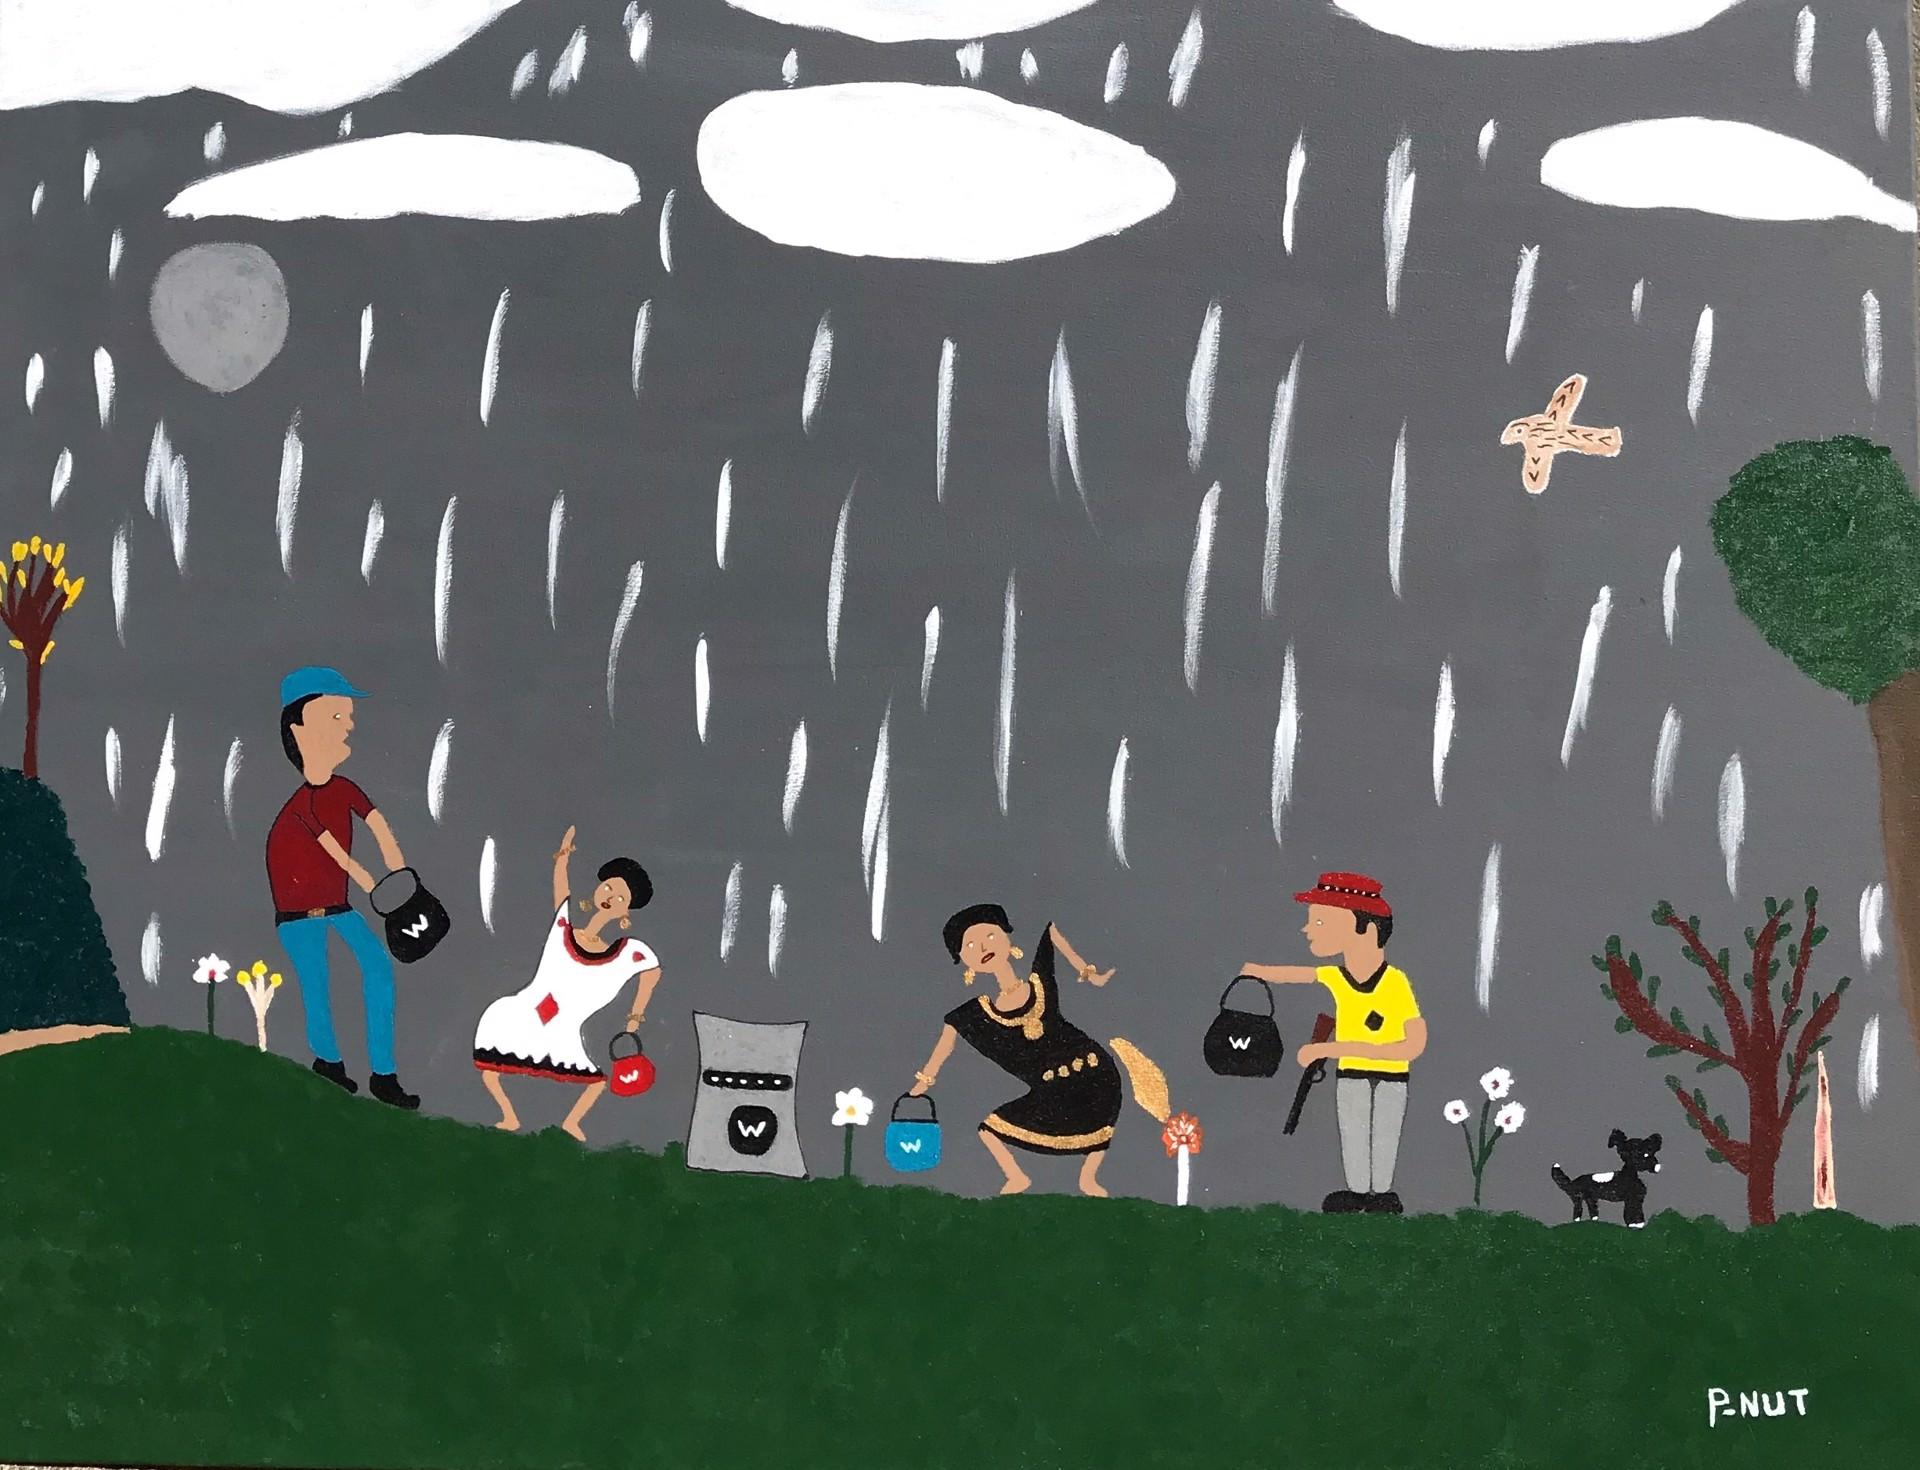 Holy Rain & vidéo, une peinture folklorique vernaculaire réalisée par un autodidacte africain américain